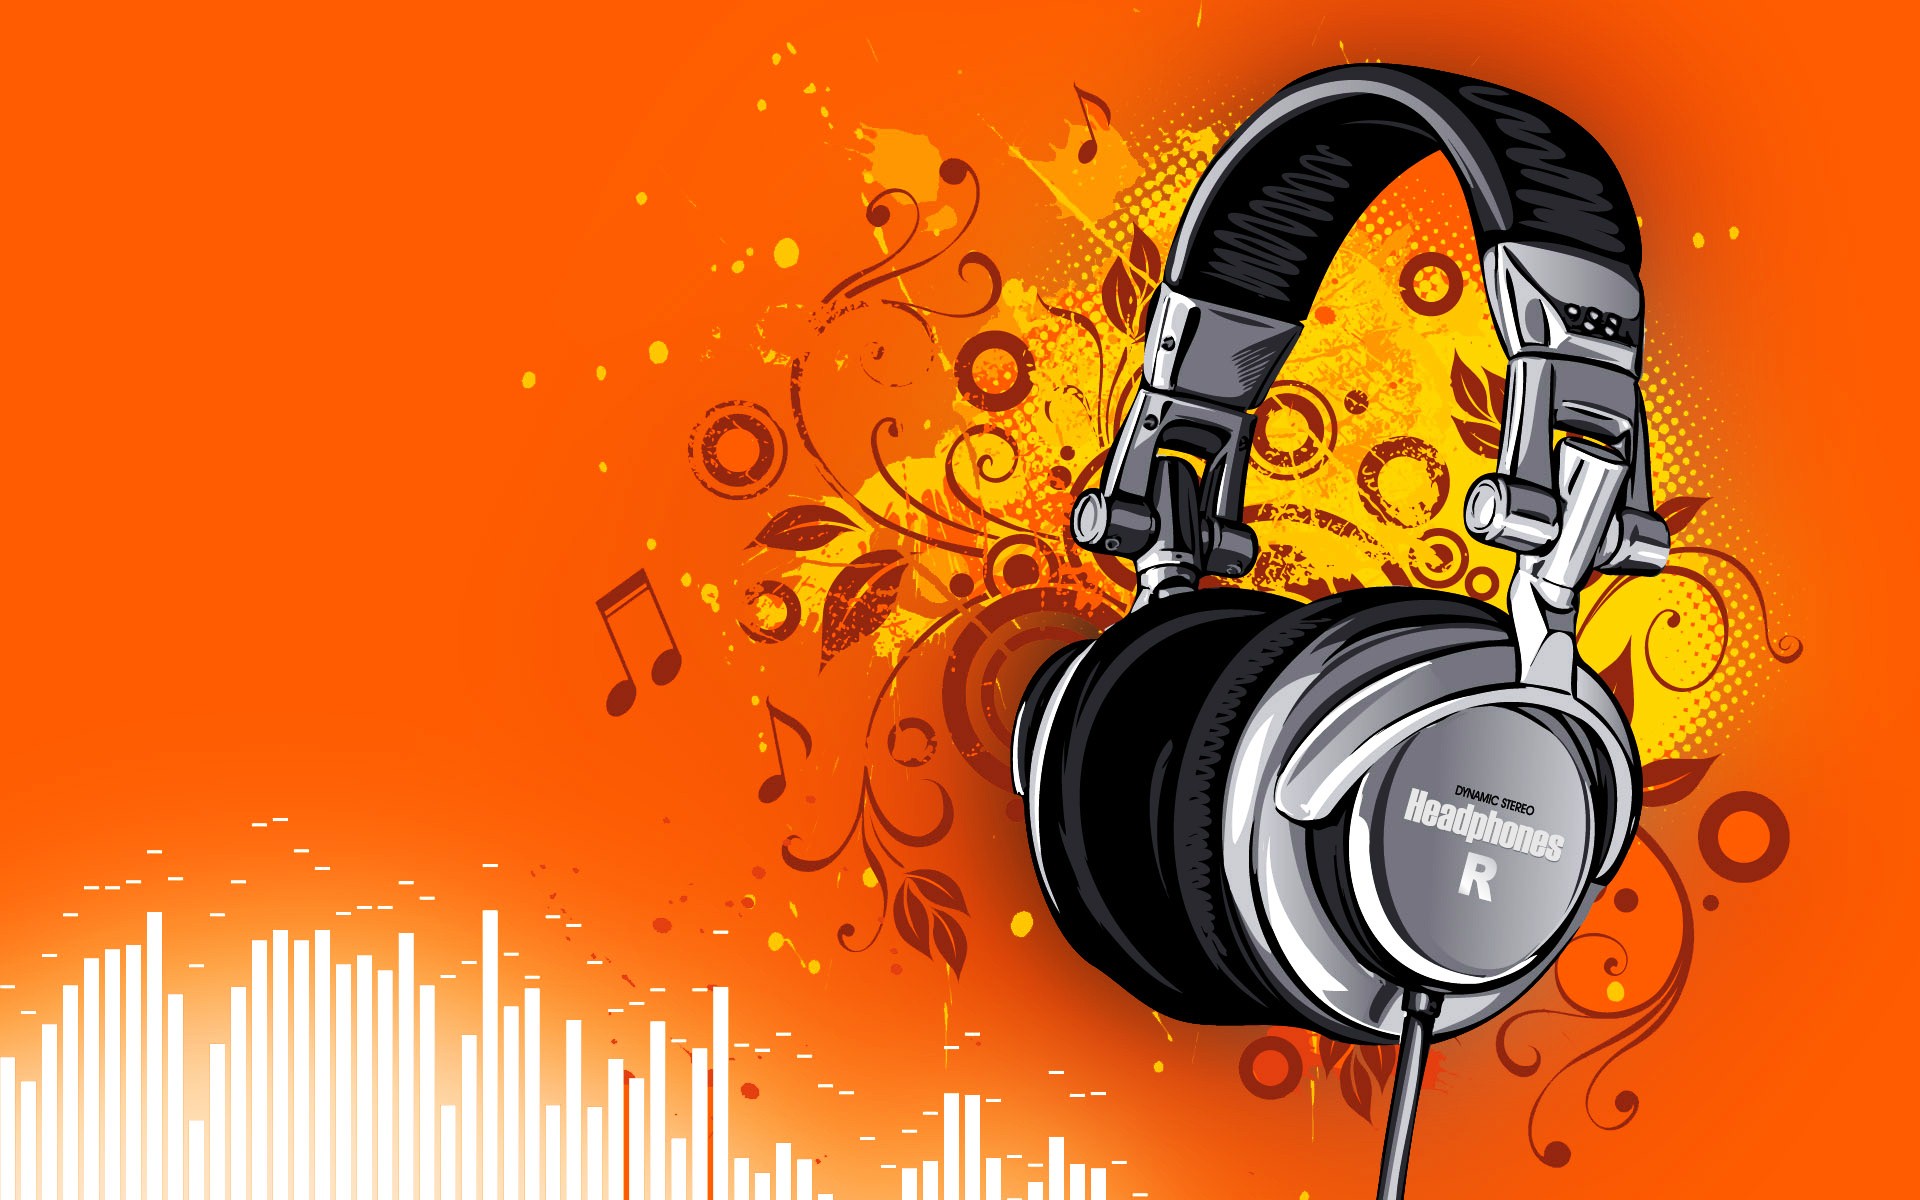 headphones wallpaper,headphones,audio equipment,orange,microphone,gadget